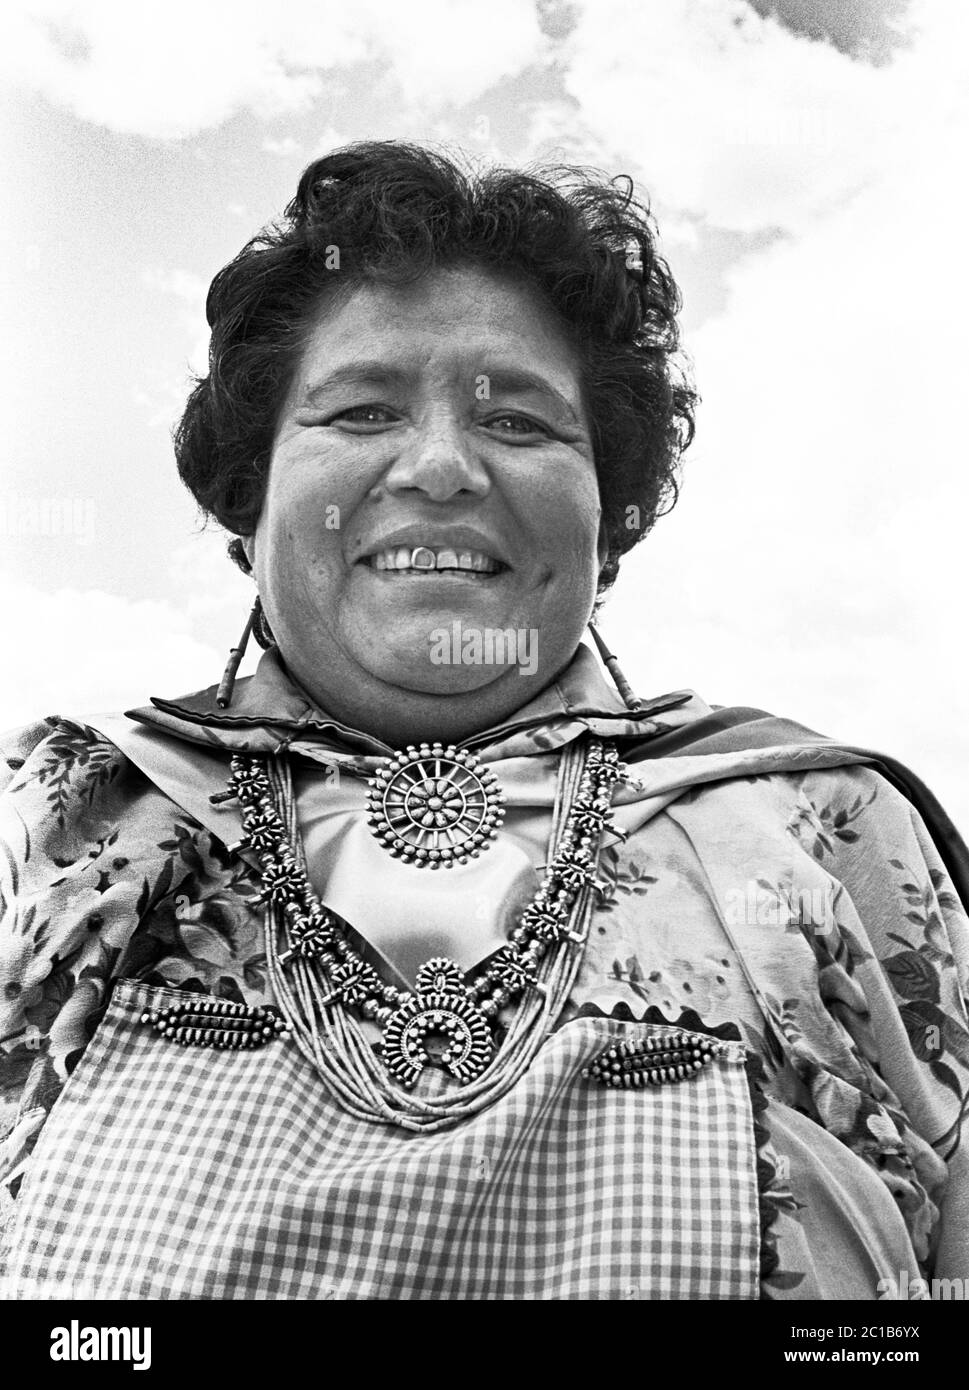 Eine indische Frau von Zuni Pueblo, die Schmuck in türkis und silber trägt. Stockfoto